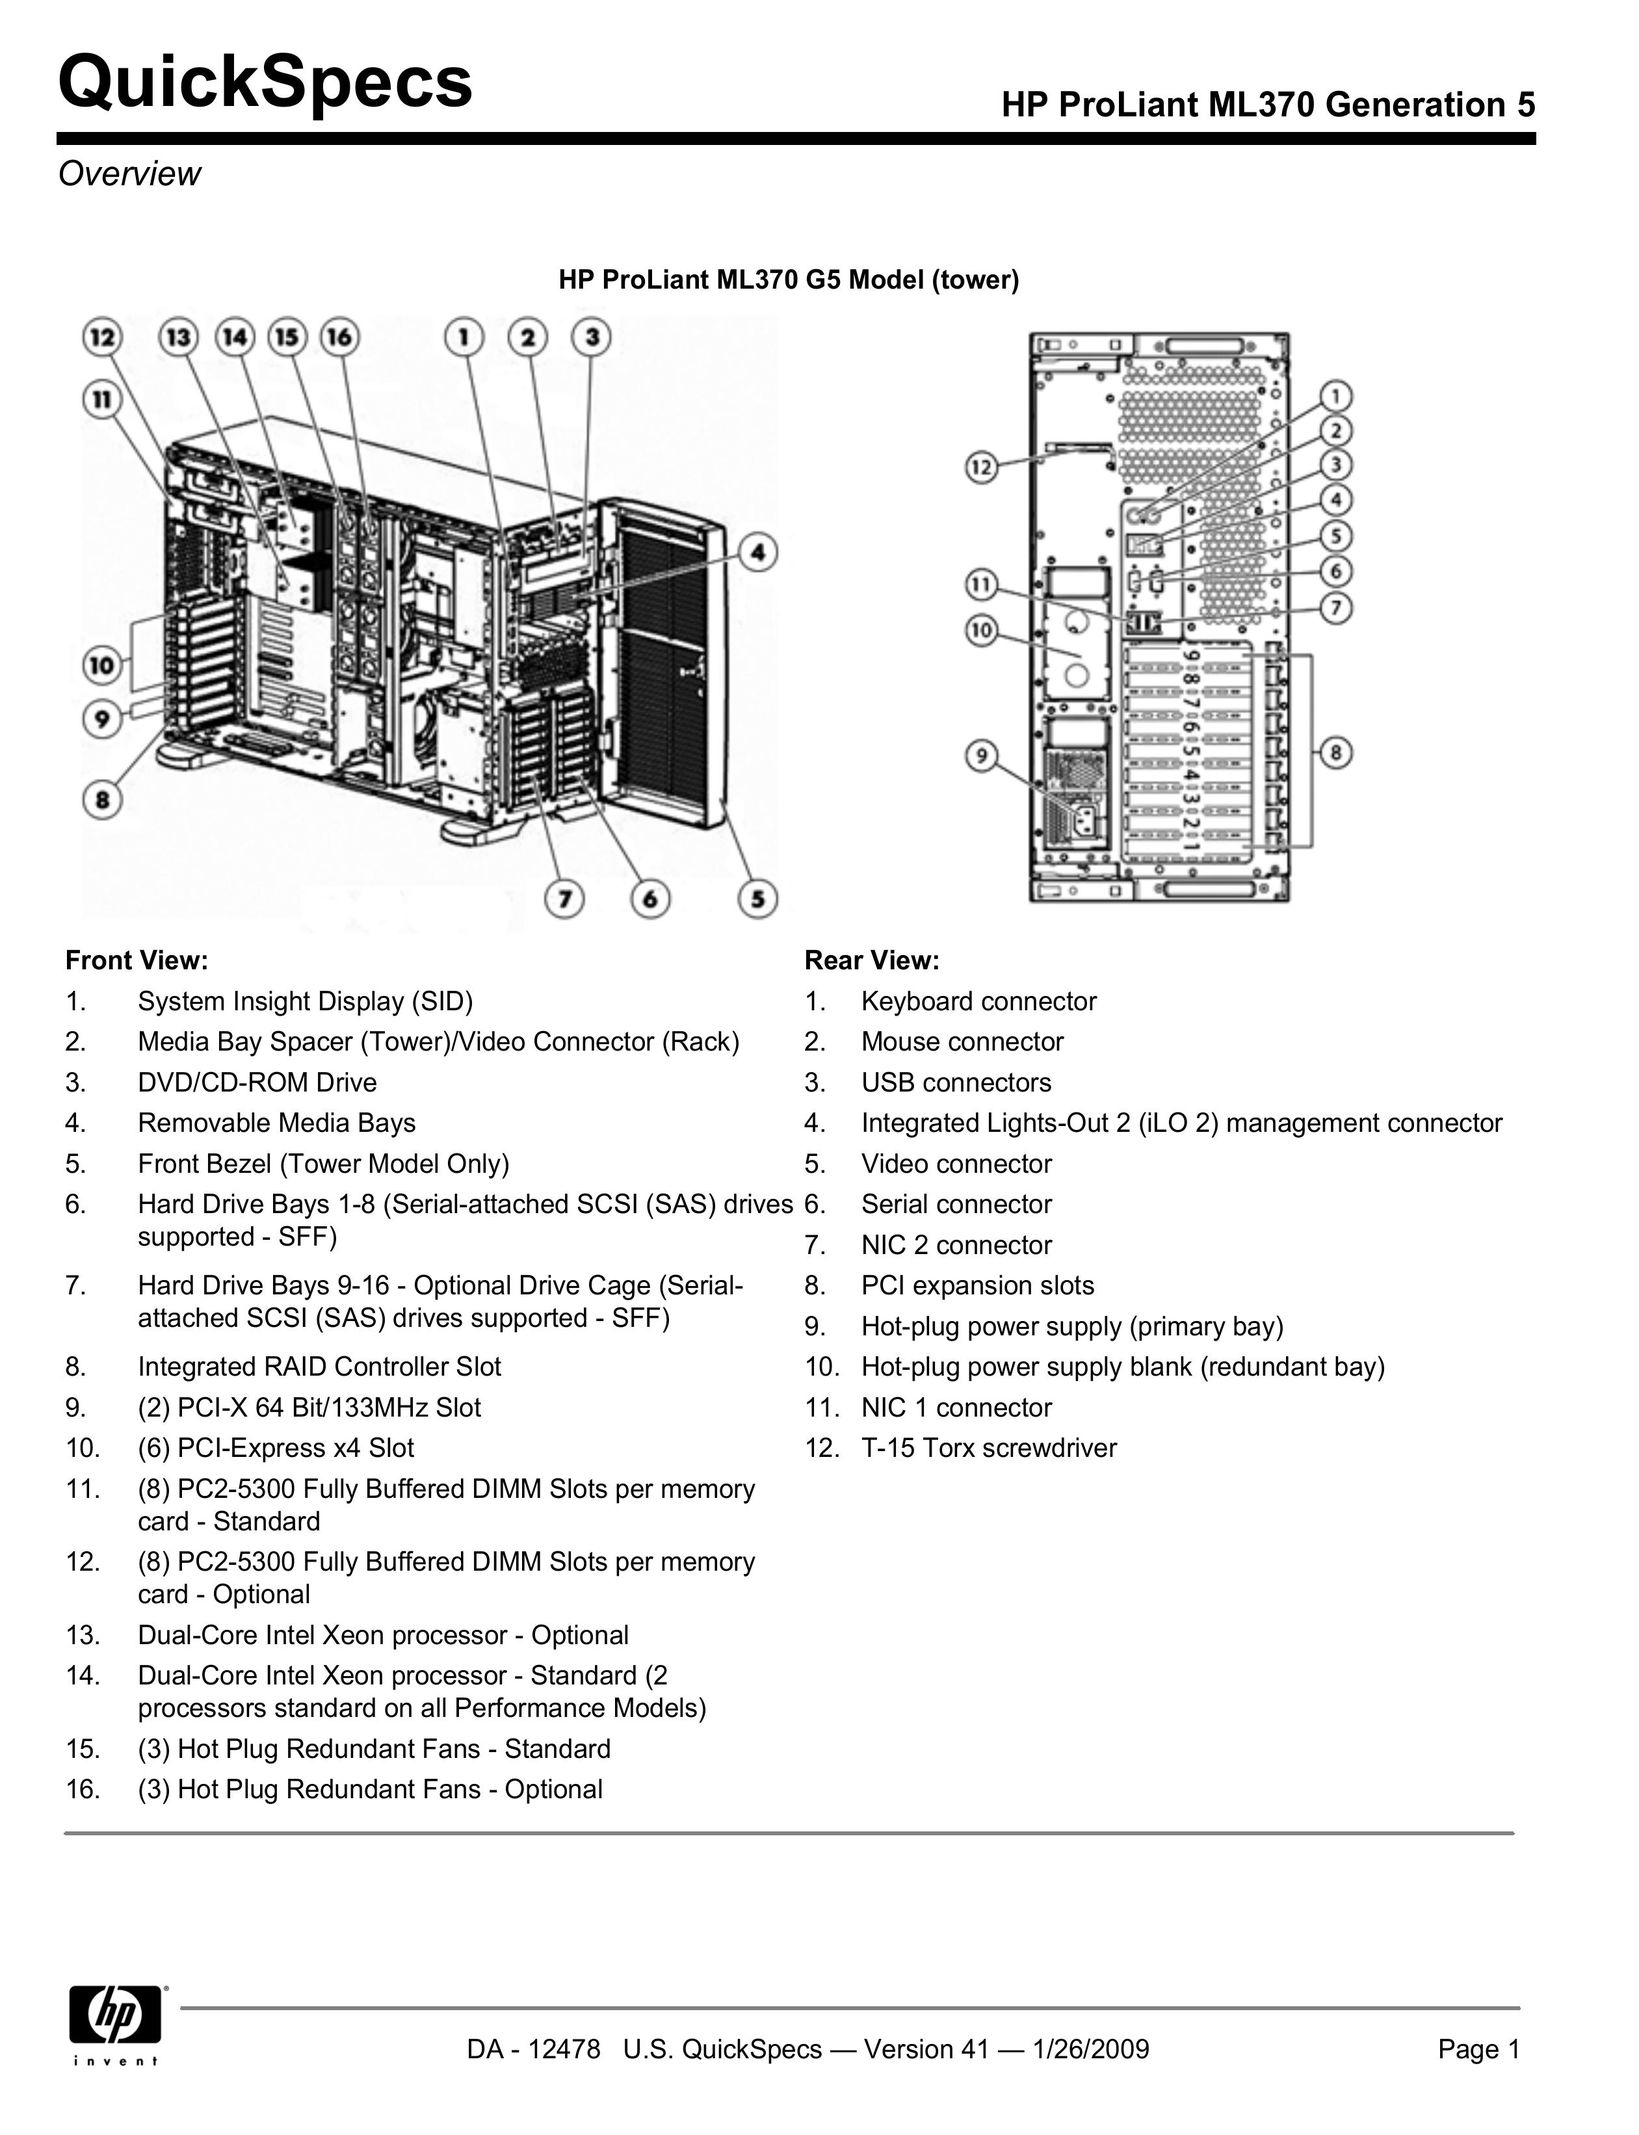 HP (Hewlett-Packard) ML370 Computer Hardware User Manual